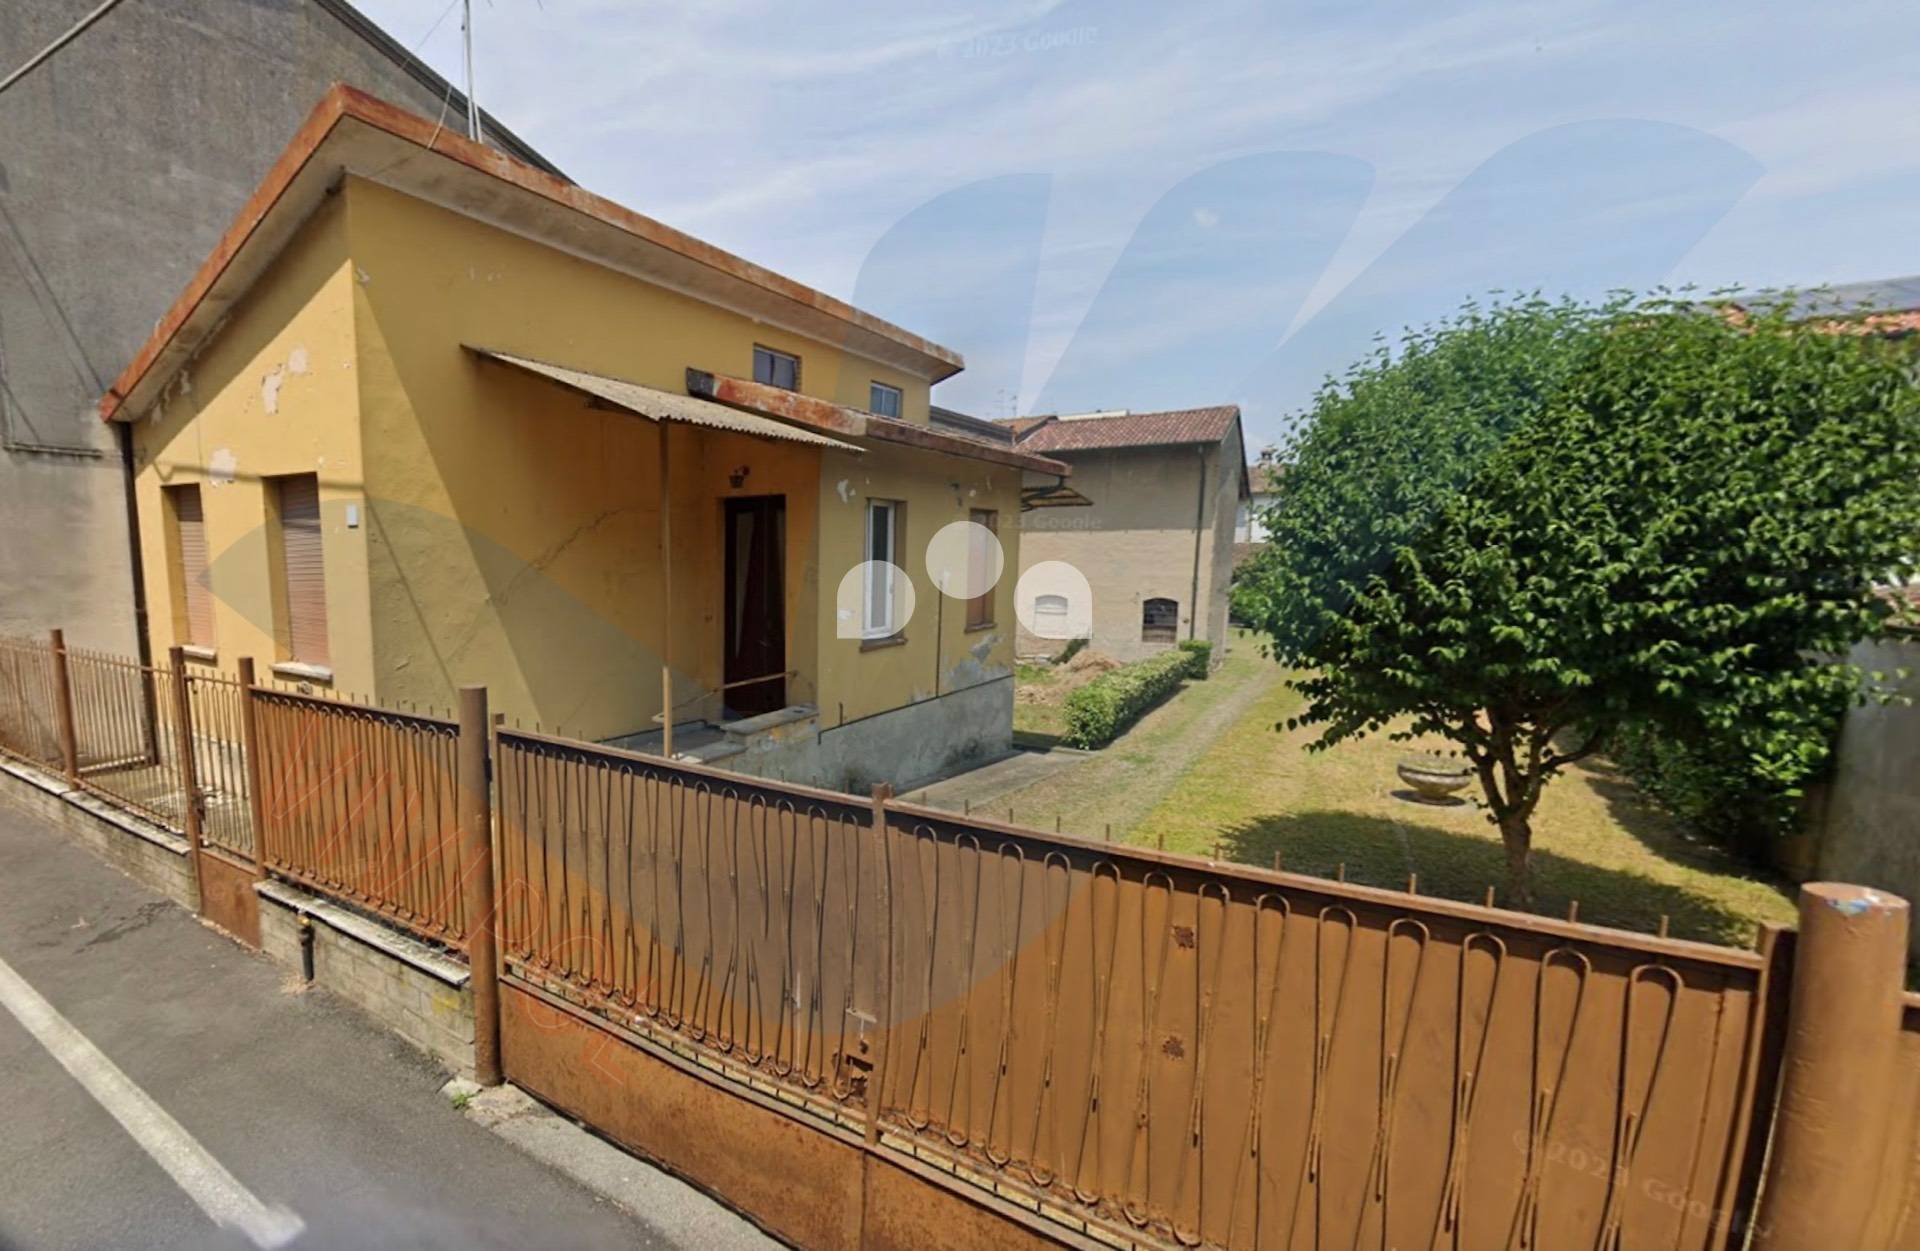 Villa Bifamiliare in vendita a Castelleone, 2 locali, prezzo € 31.500 | CambioCasa.it